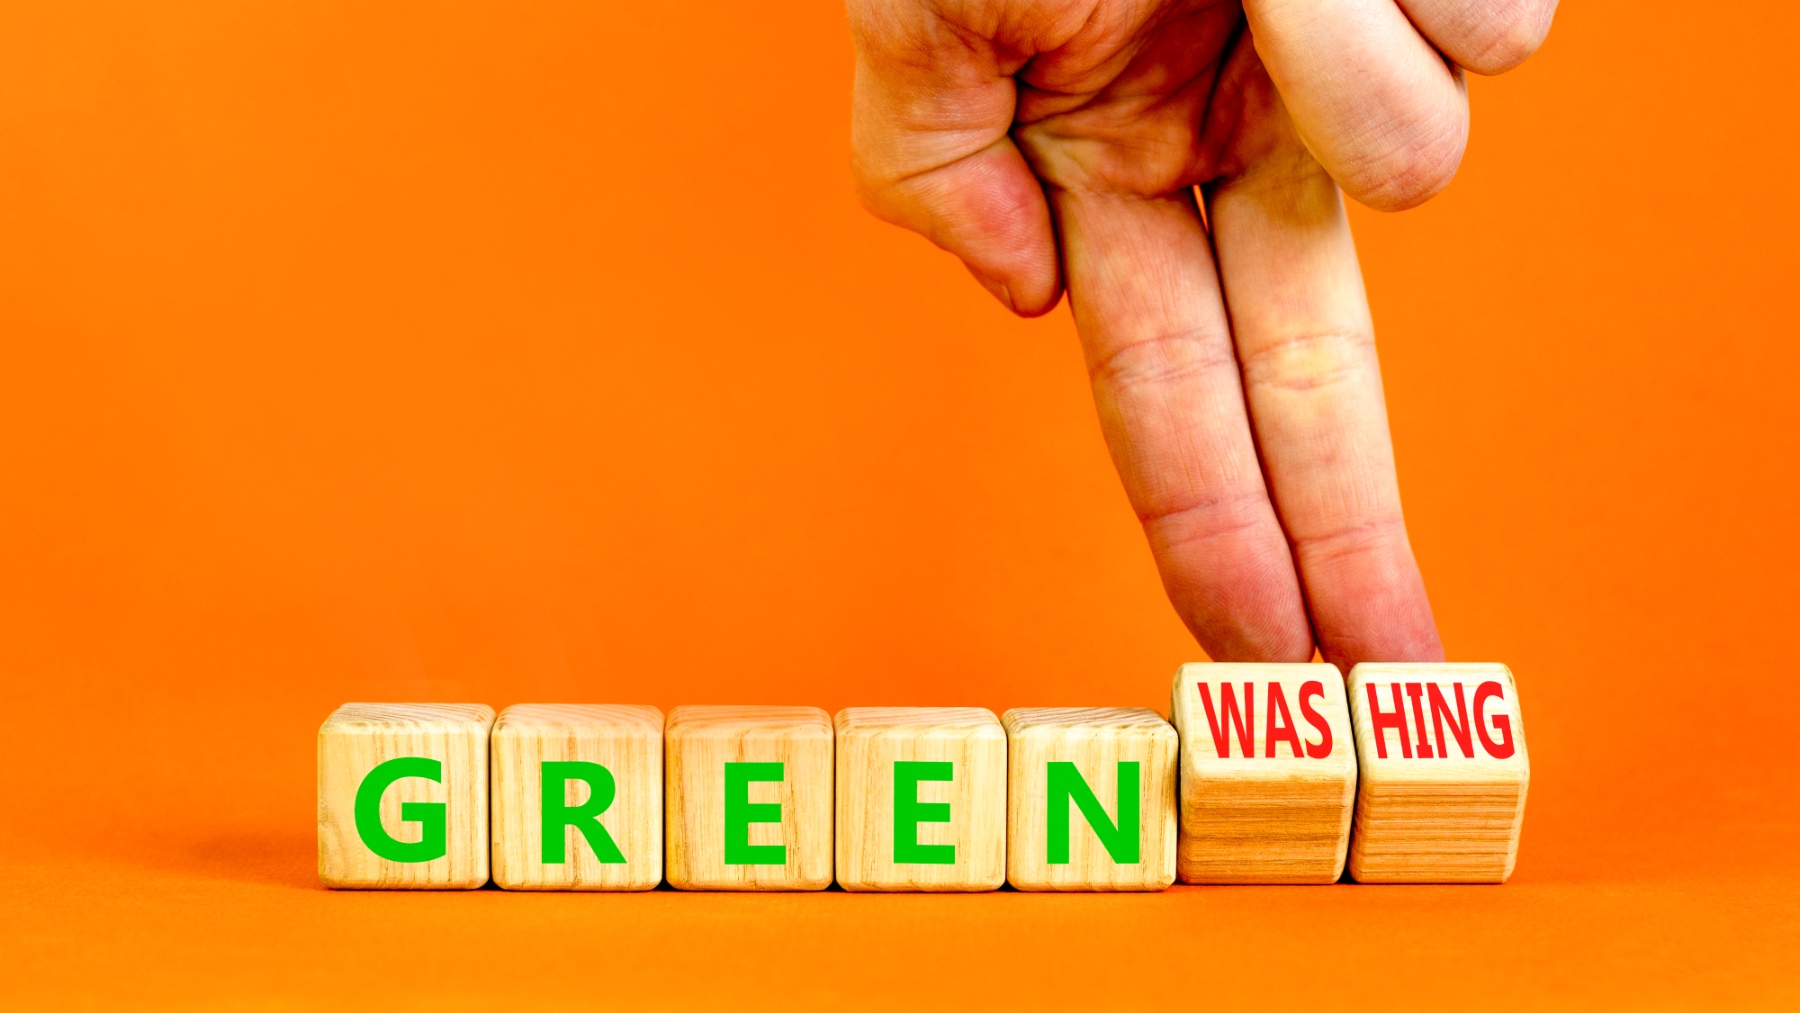 Europa pone cerco al ecopostureo, también denominado como greenwashing o blanqueo ecológico